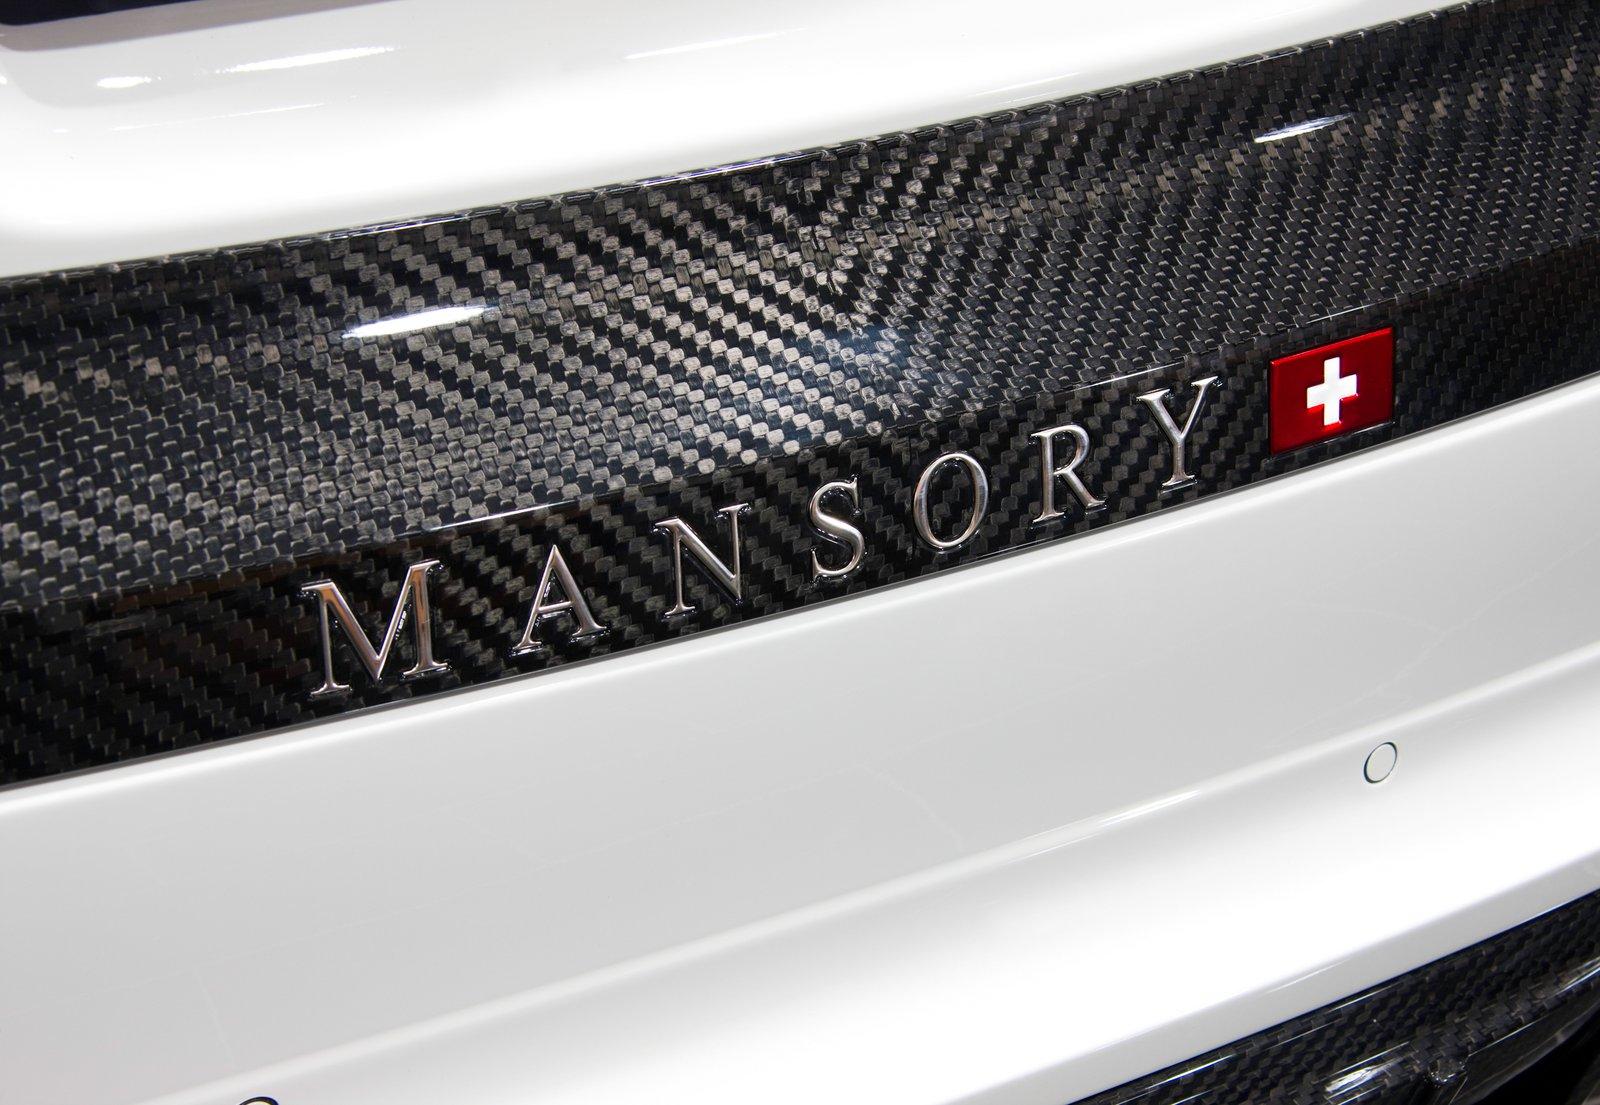 Mansory BMW X6 M